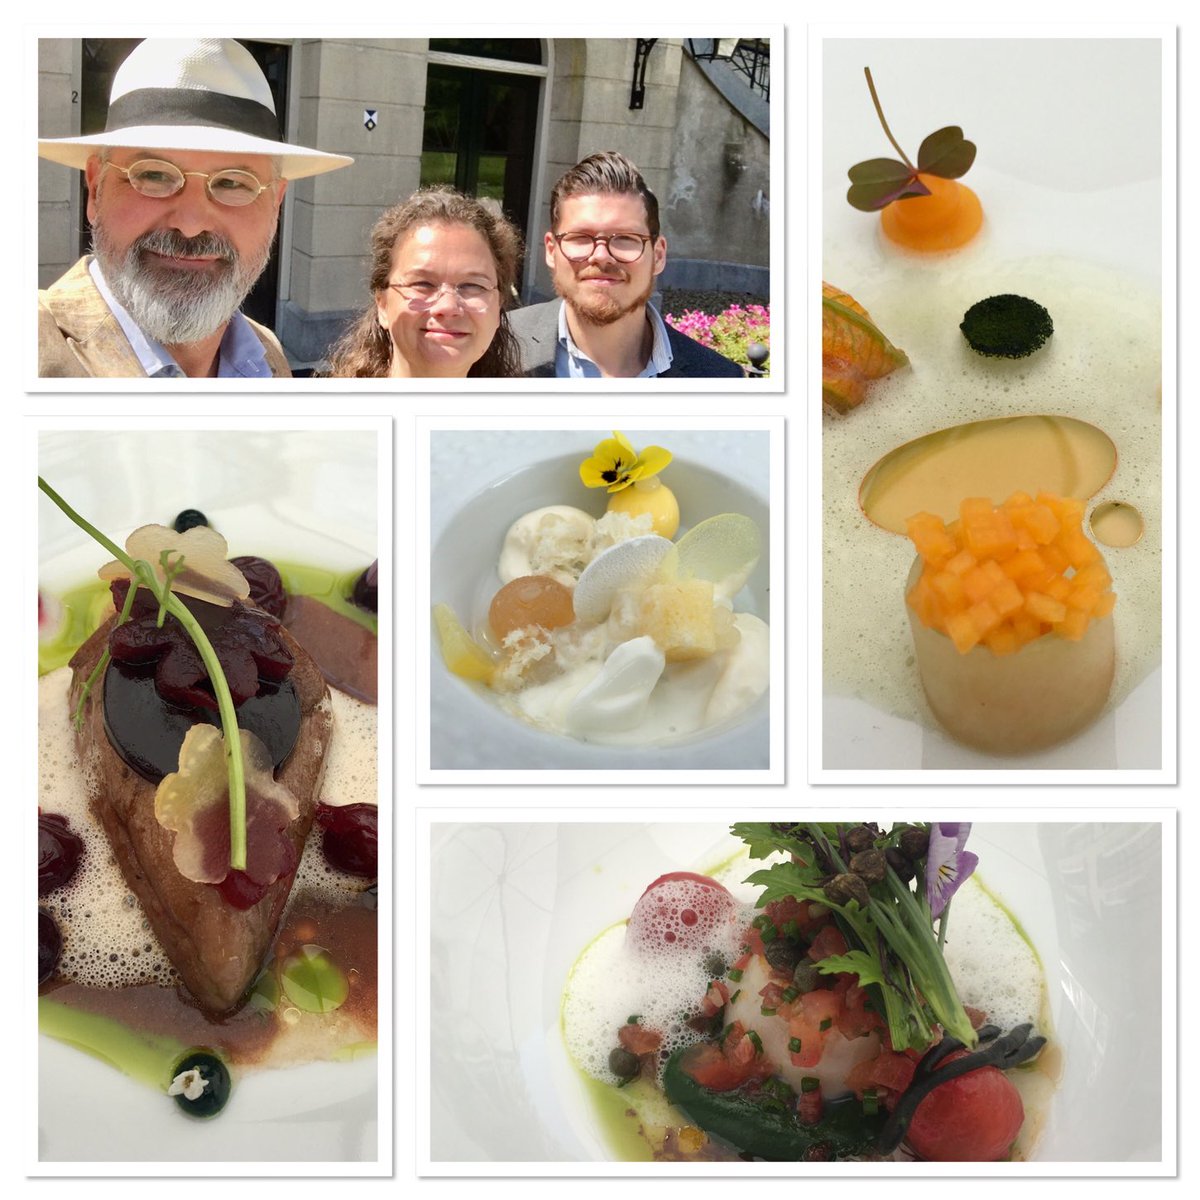 Een exquise lunch om de hoek. Dank aan keukenbrigade en bediening restaurant #Voltaire Parc Broekhuizen voor een fantastische middag. Het was weer genieten op jullie prachtige terras in #Leersum ⁦⁦@MICHELINgidsBNL⁩